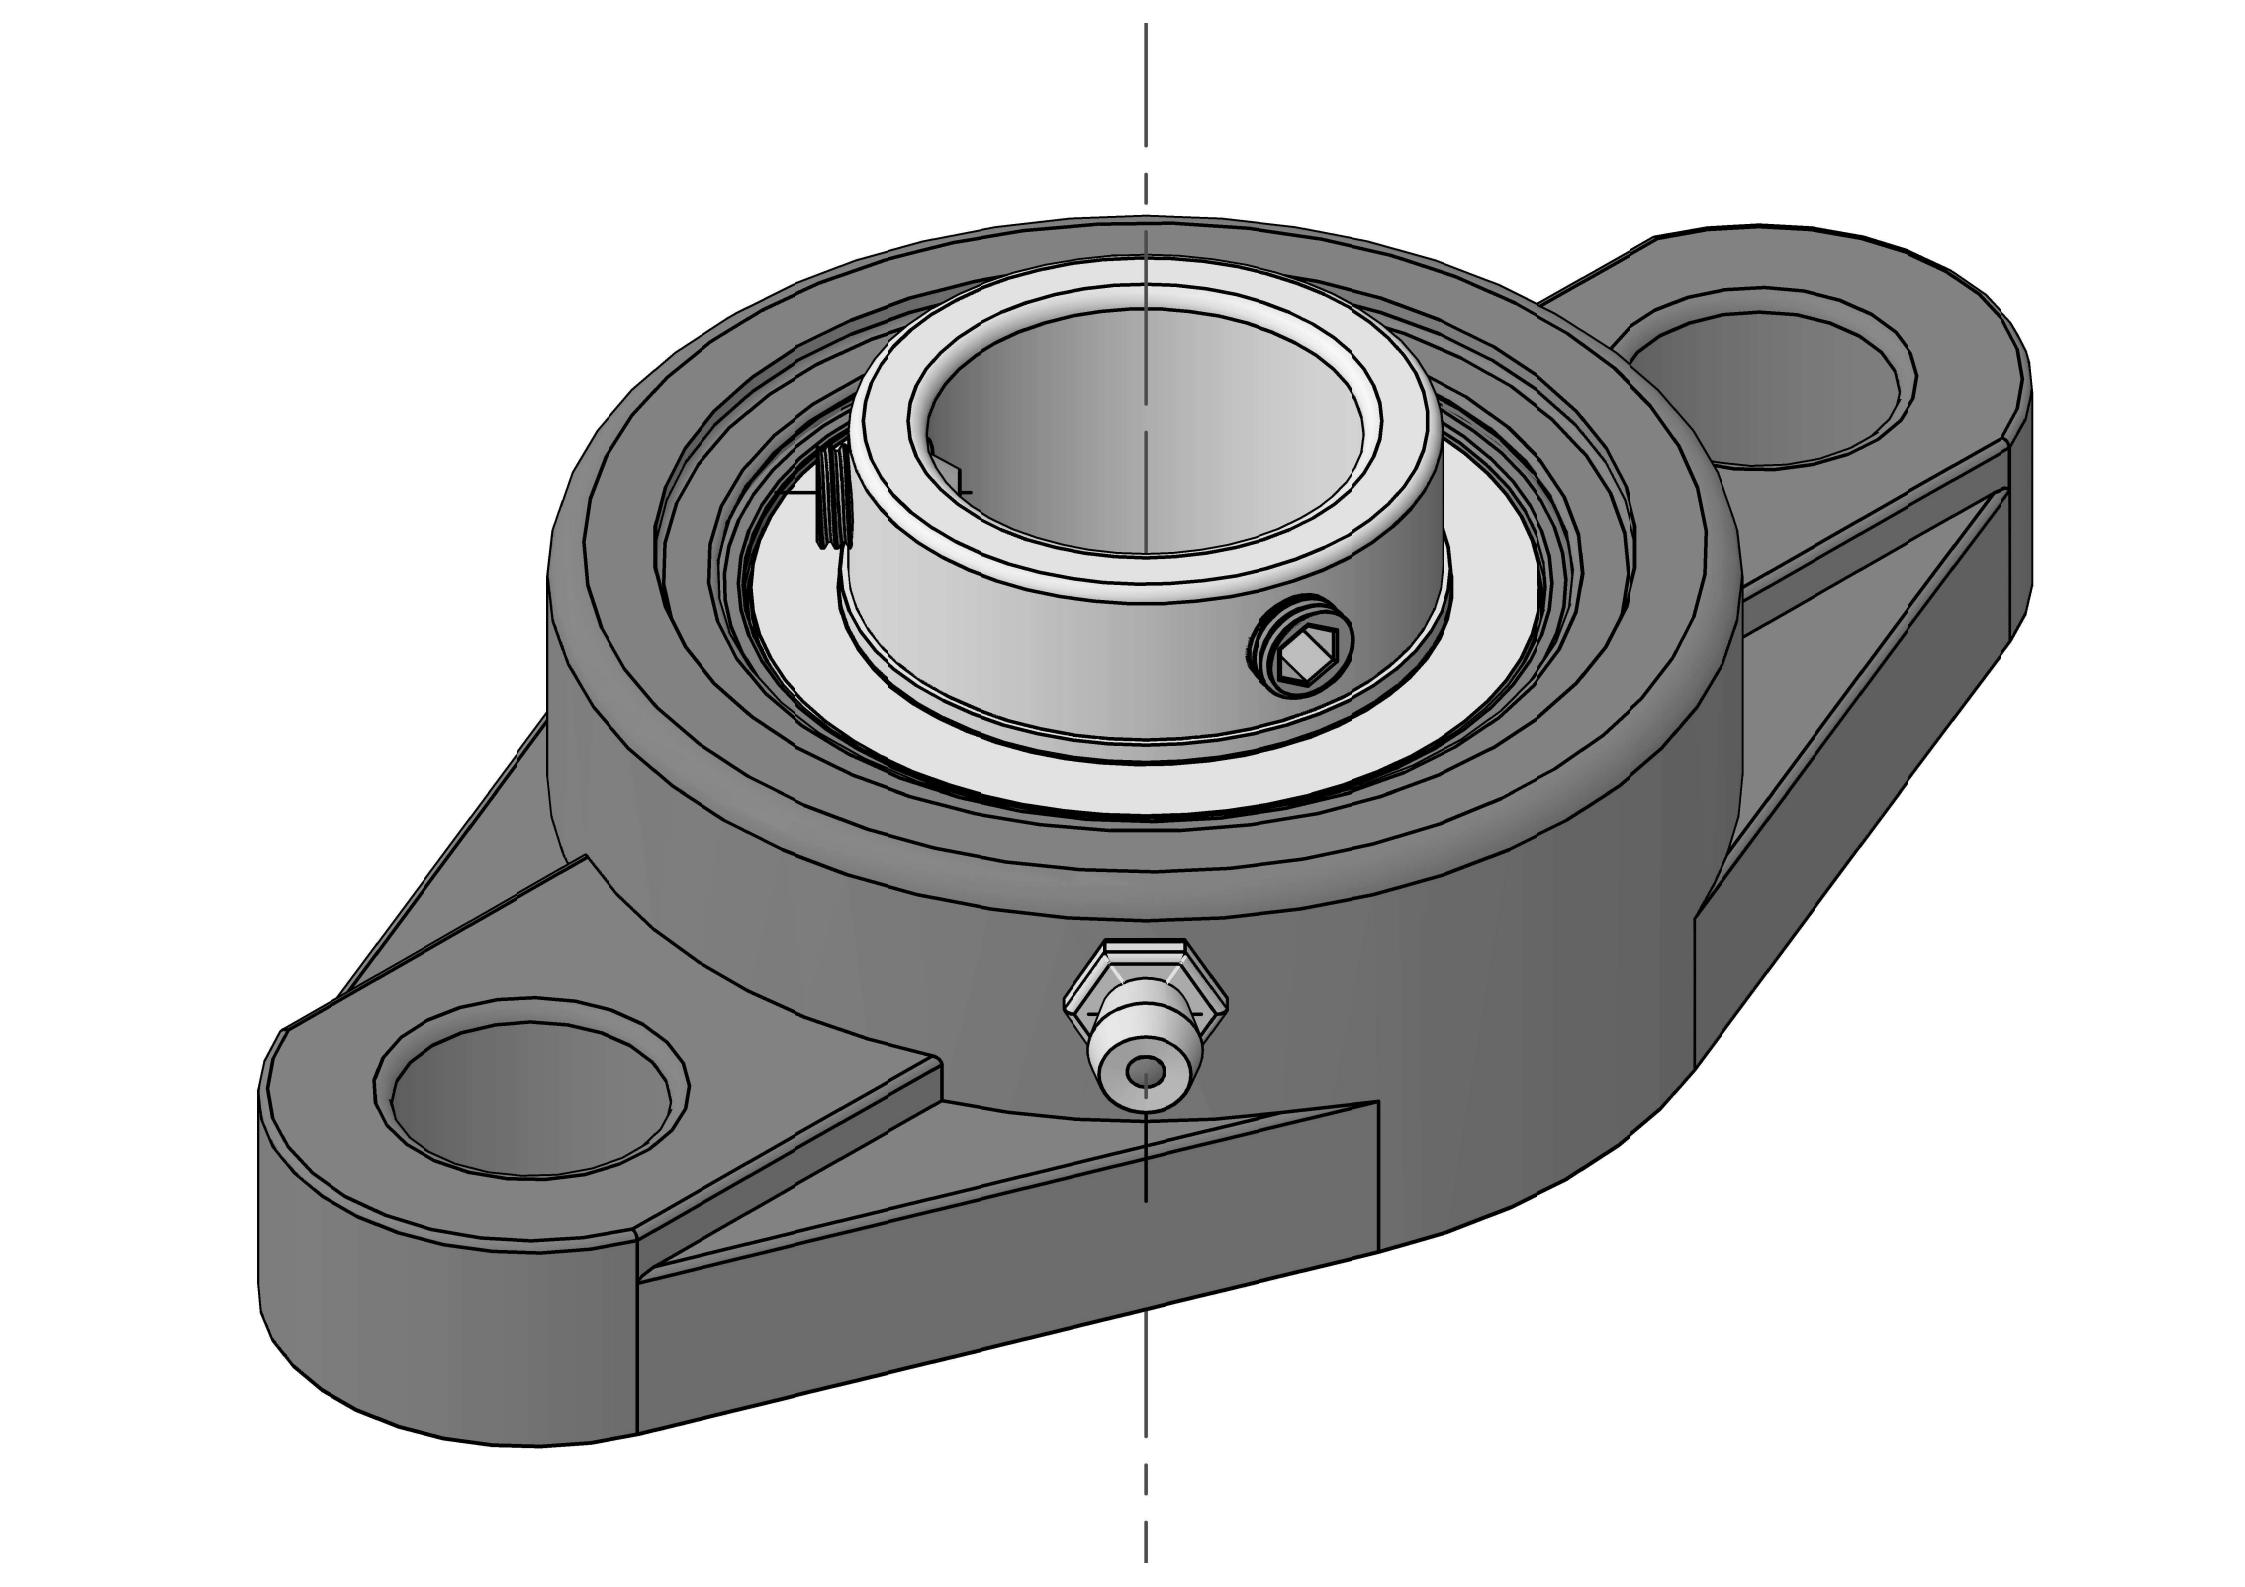 HCFLU205-15 Duha ka Bolt Oval Flange bearing Units nga adunay 15/16 pulgada nga bore